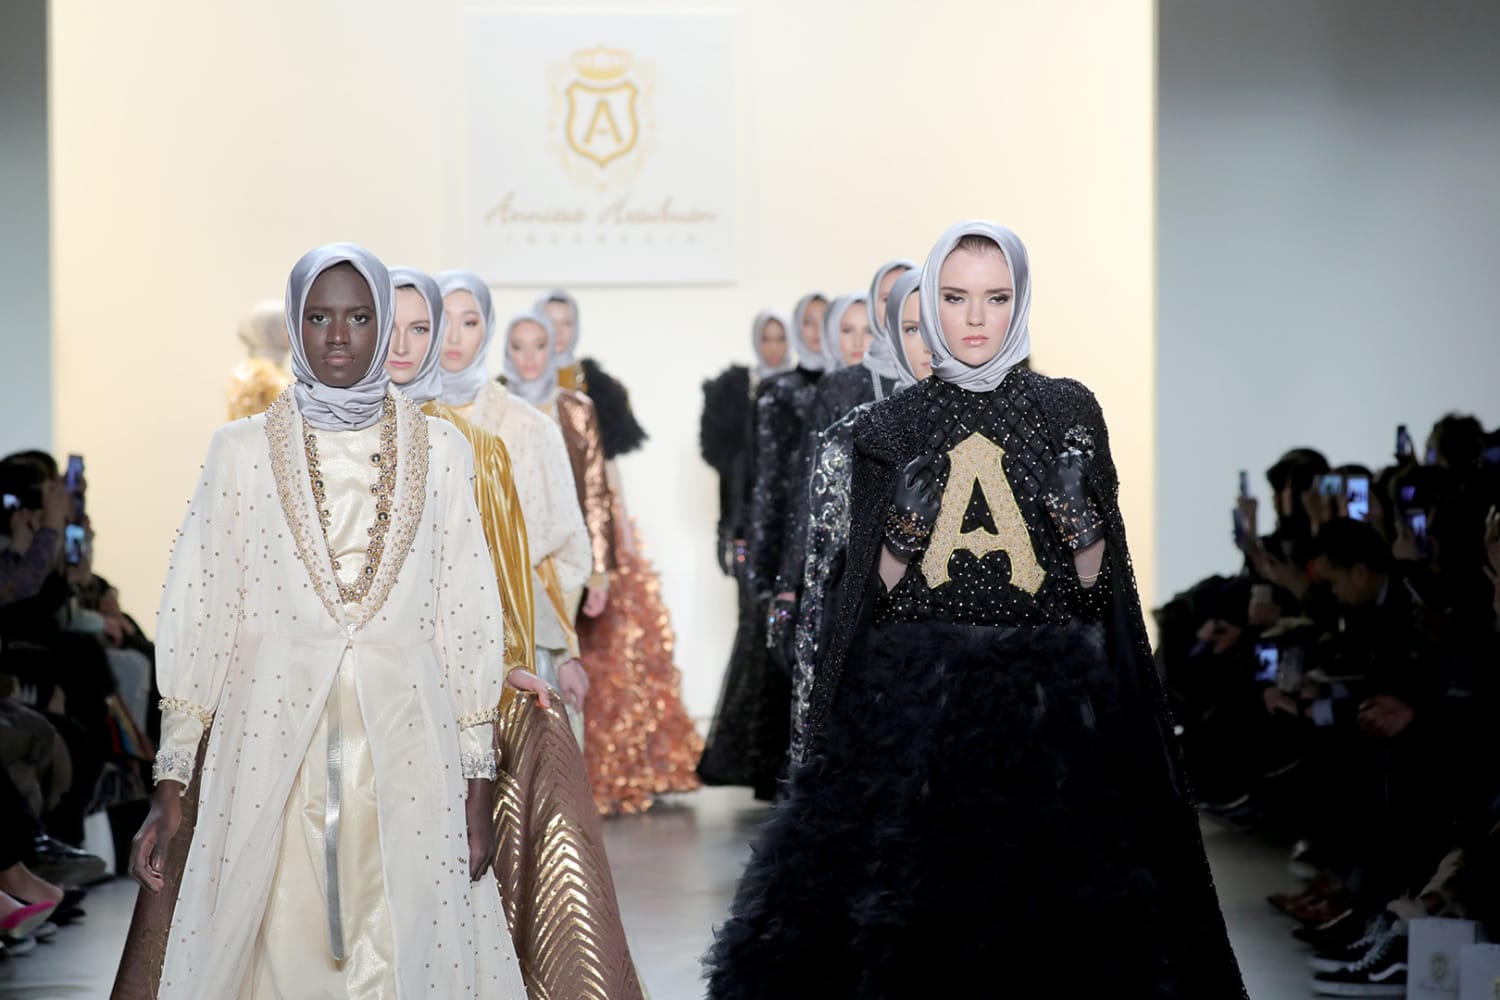 At New York Fashion Week Modest Fashion Designer Makes Statement